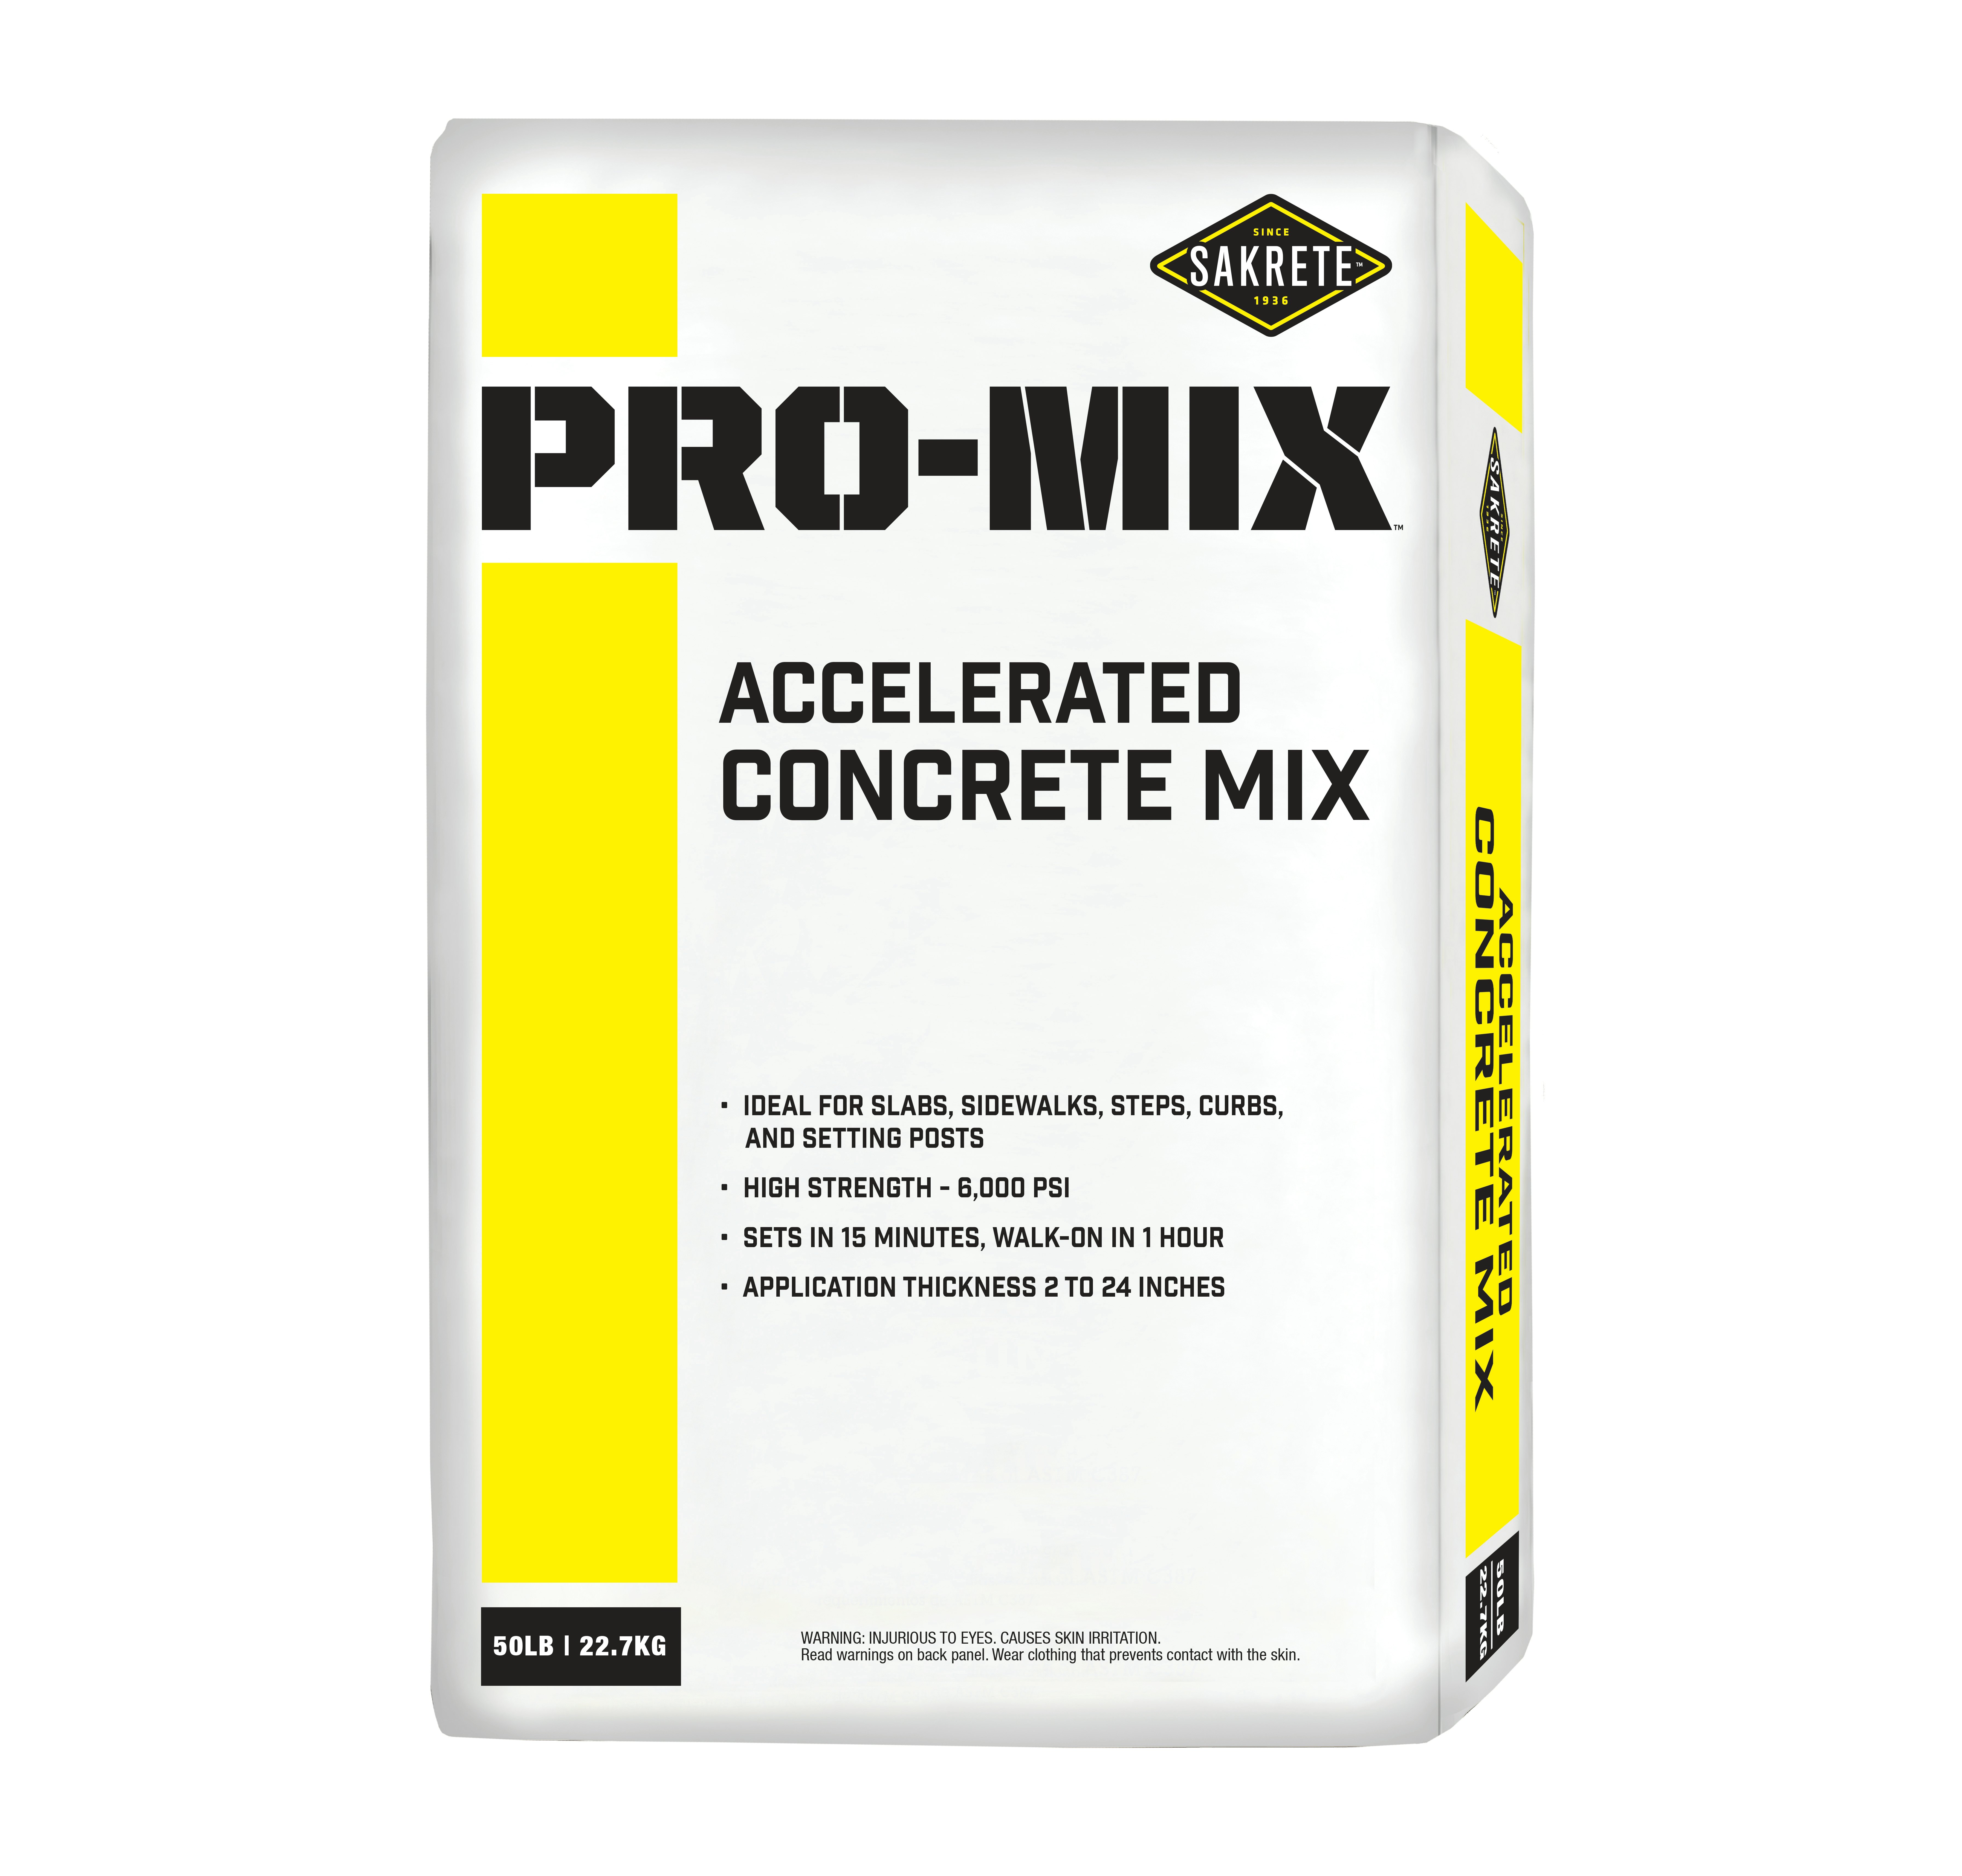 The Sakrete Pro Mix Concrete Mix Line - Concrete Repair, Accelerated  Concrete Mix, All-Purpose Cement Mix From: Sakrete